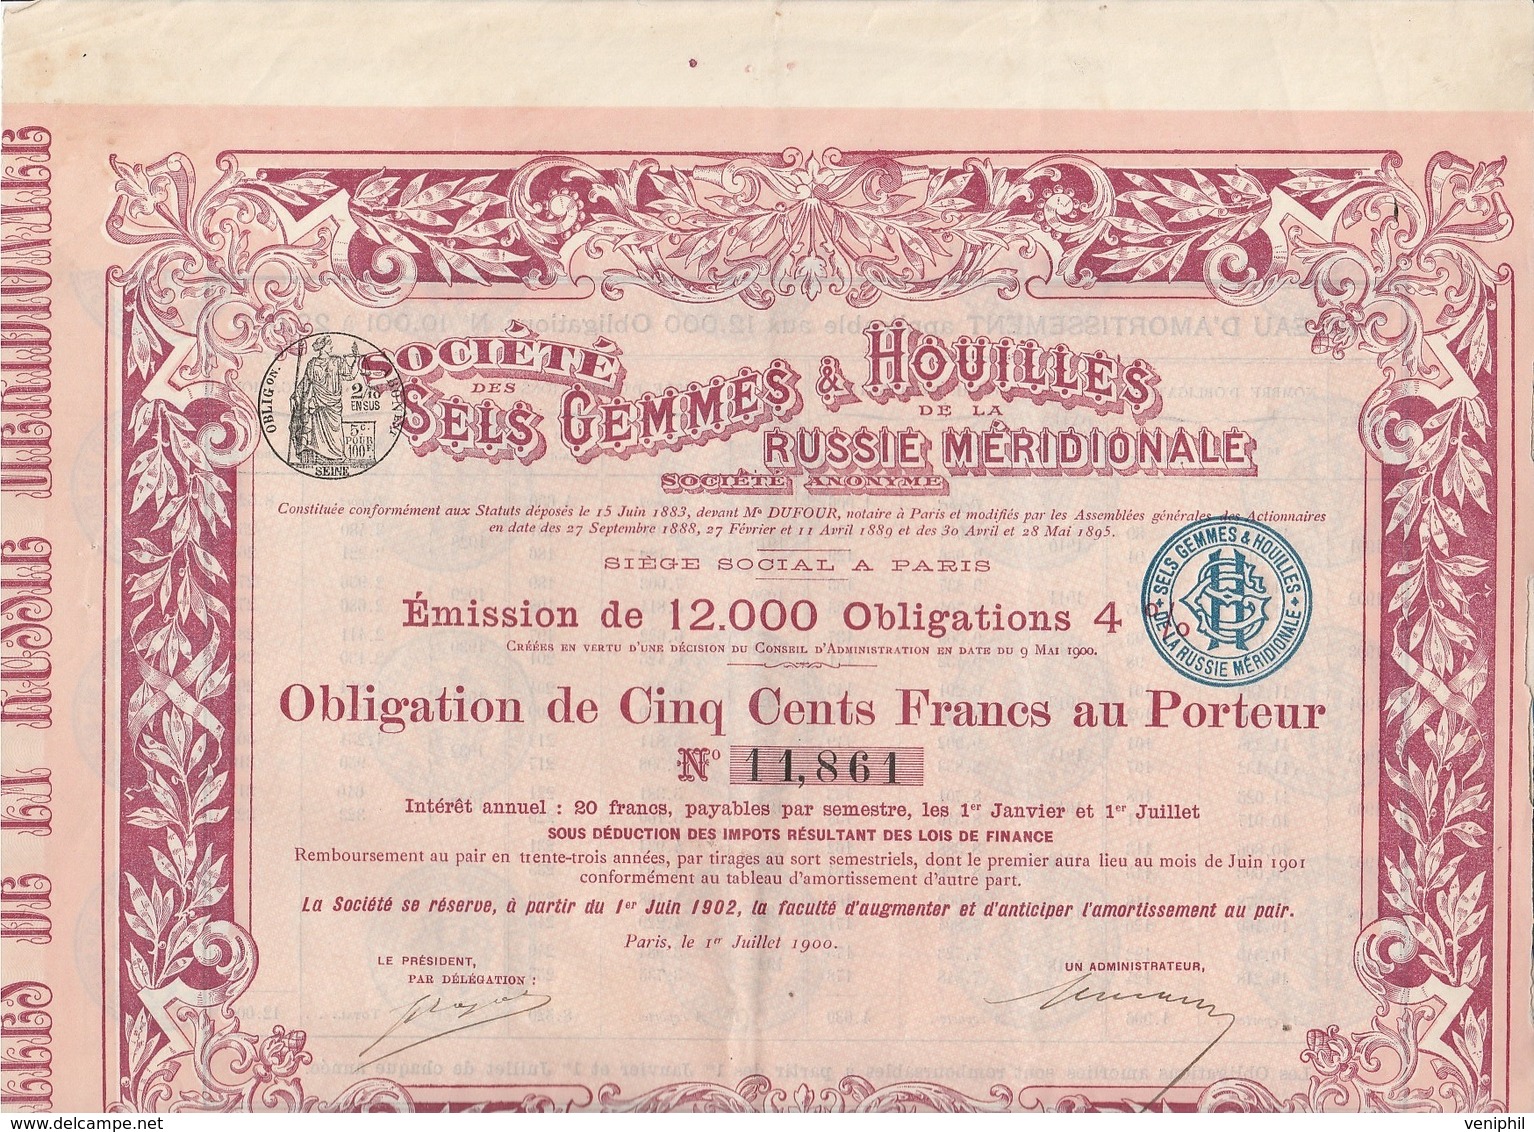 OBLIGATION DE 500 FRANCS - SOCIETE DES SELS GEMMES & HOUILLES DE LA RUSSIE MERIDIONALE - ANNEE 1900 - Mines